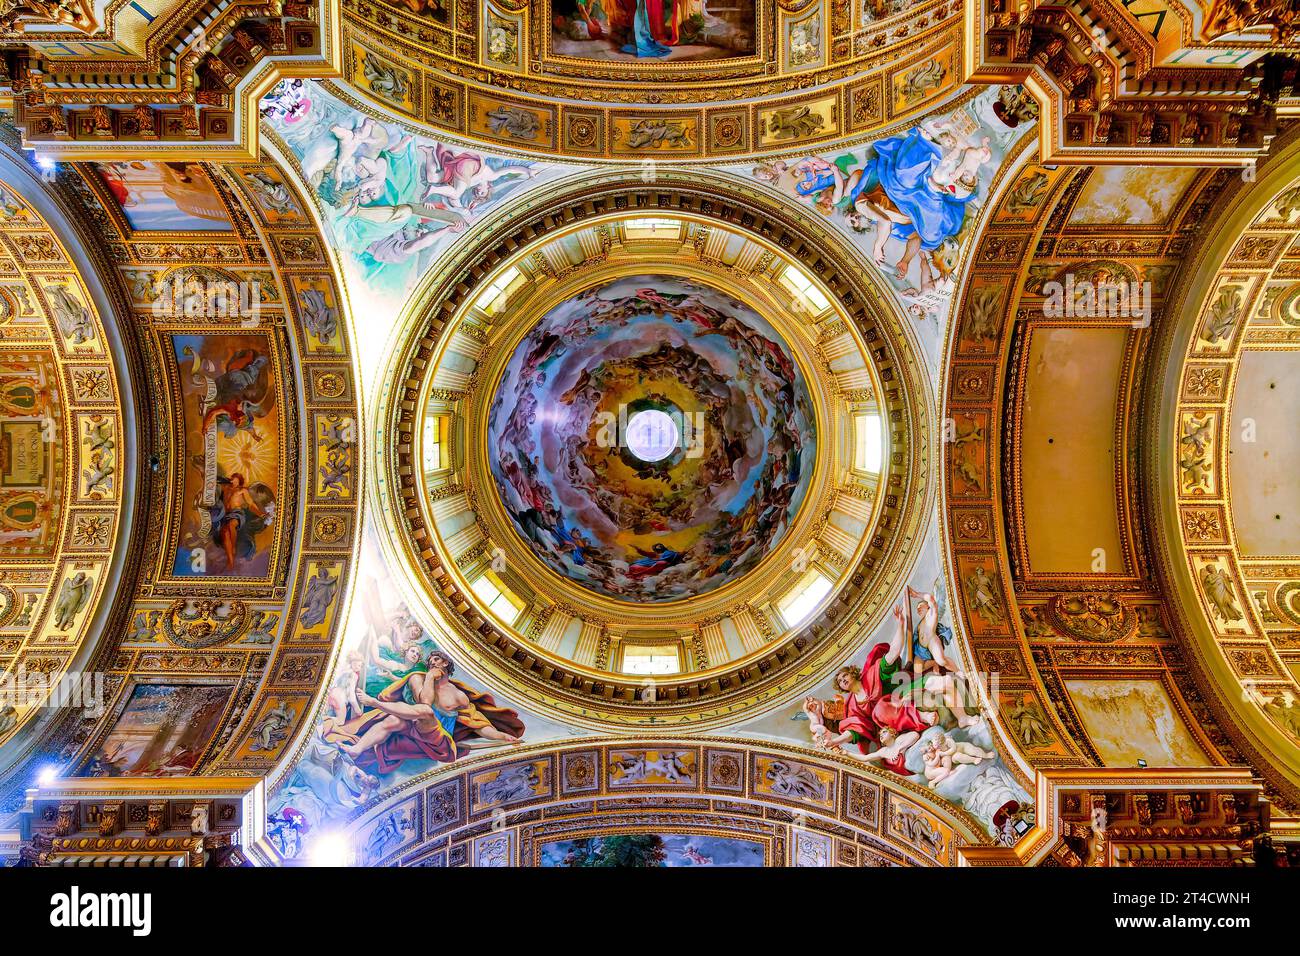 Dome of the Church of Sant'Andrea della Valle, Rome, Italy Stock Photo